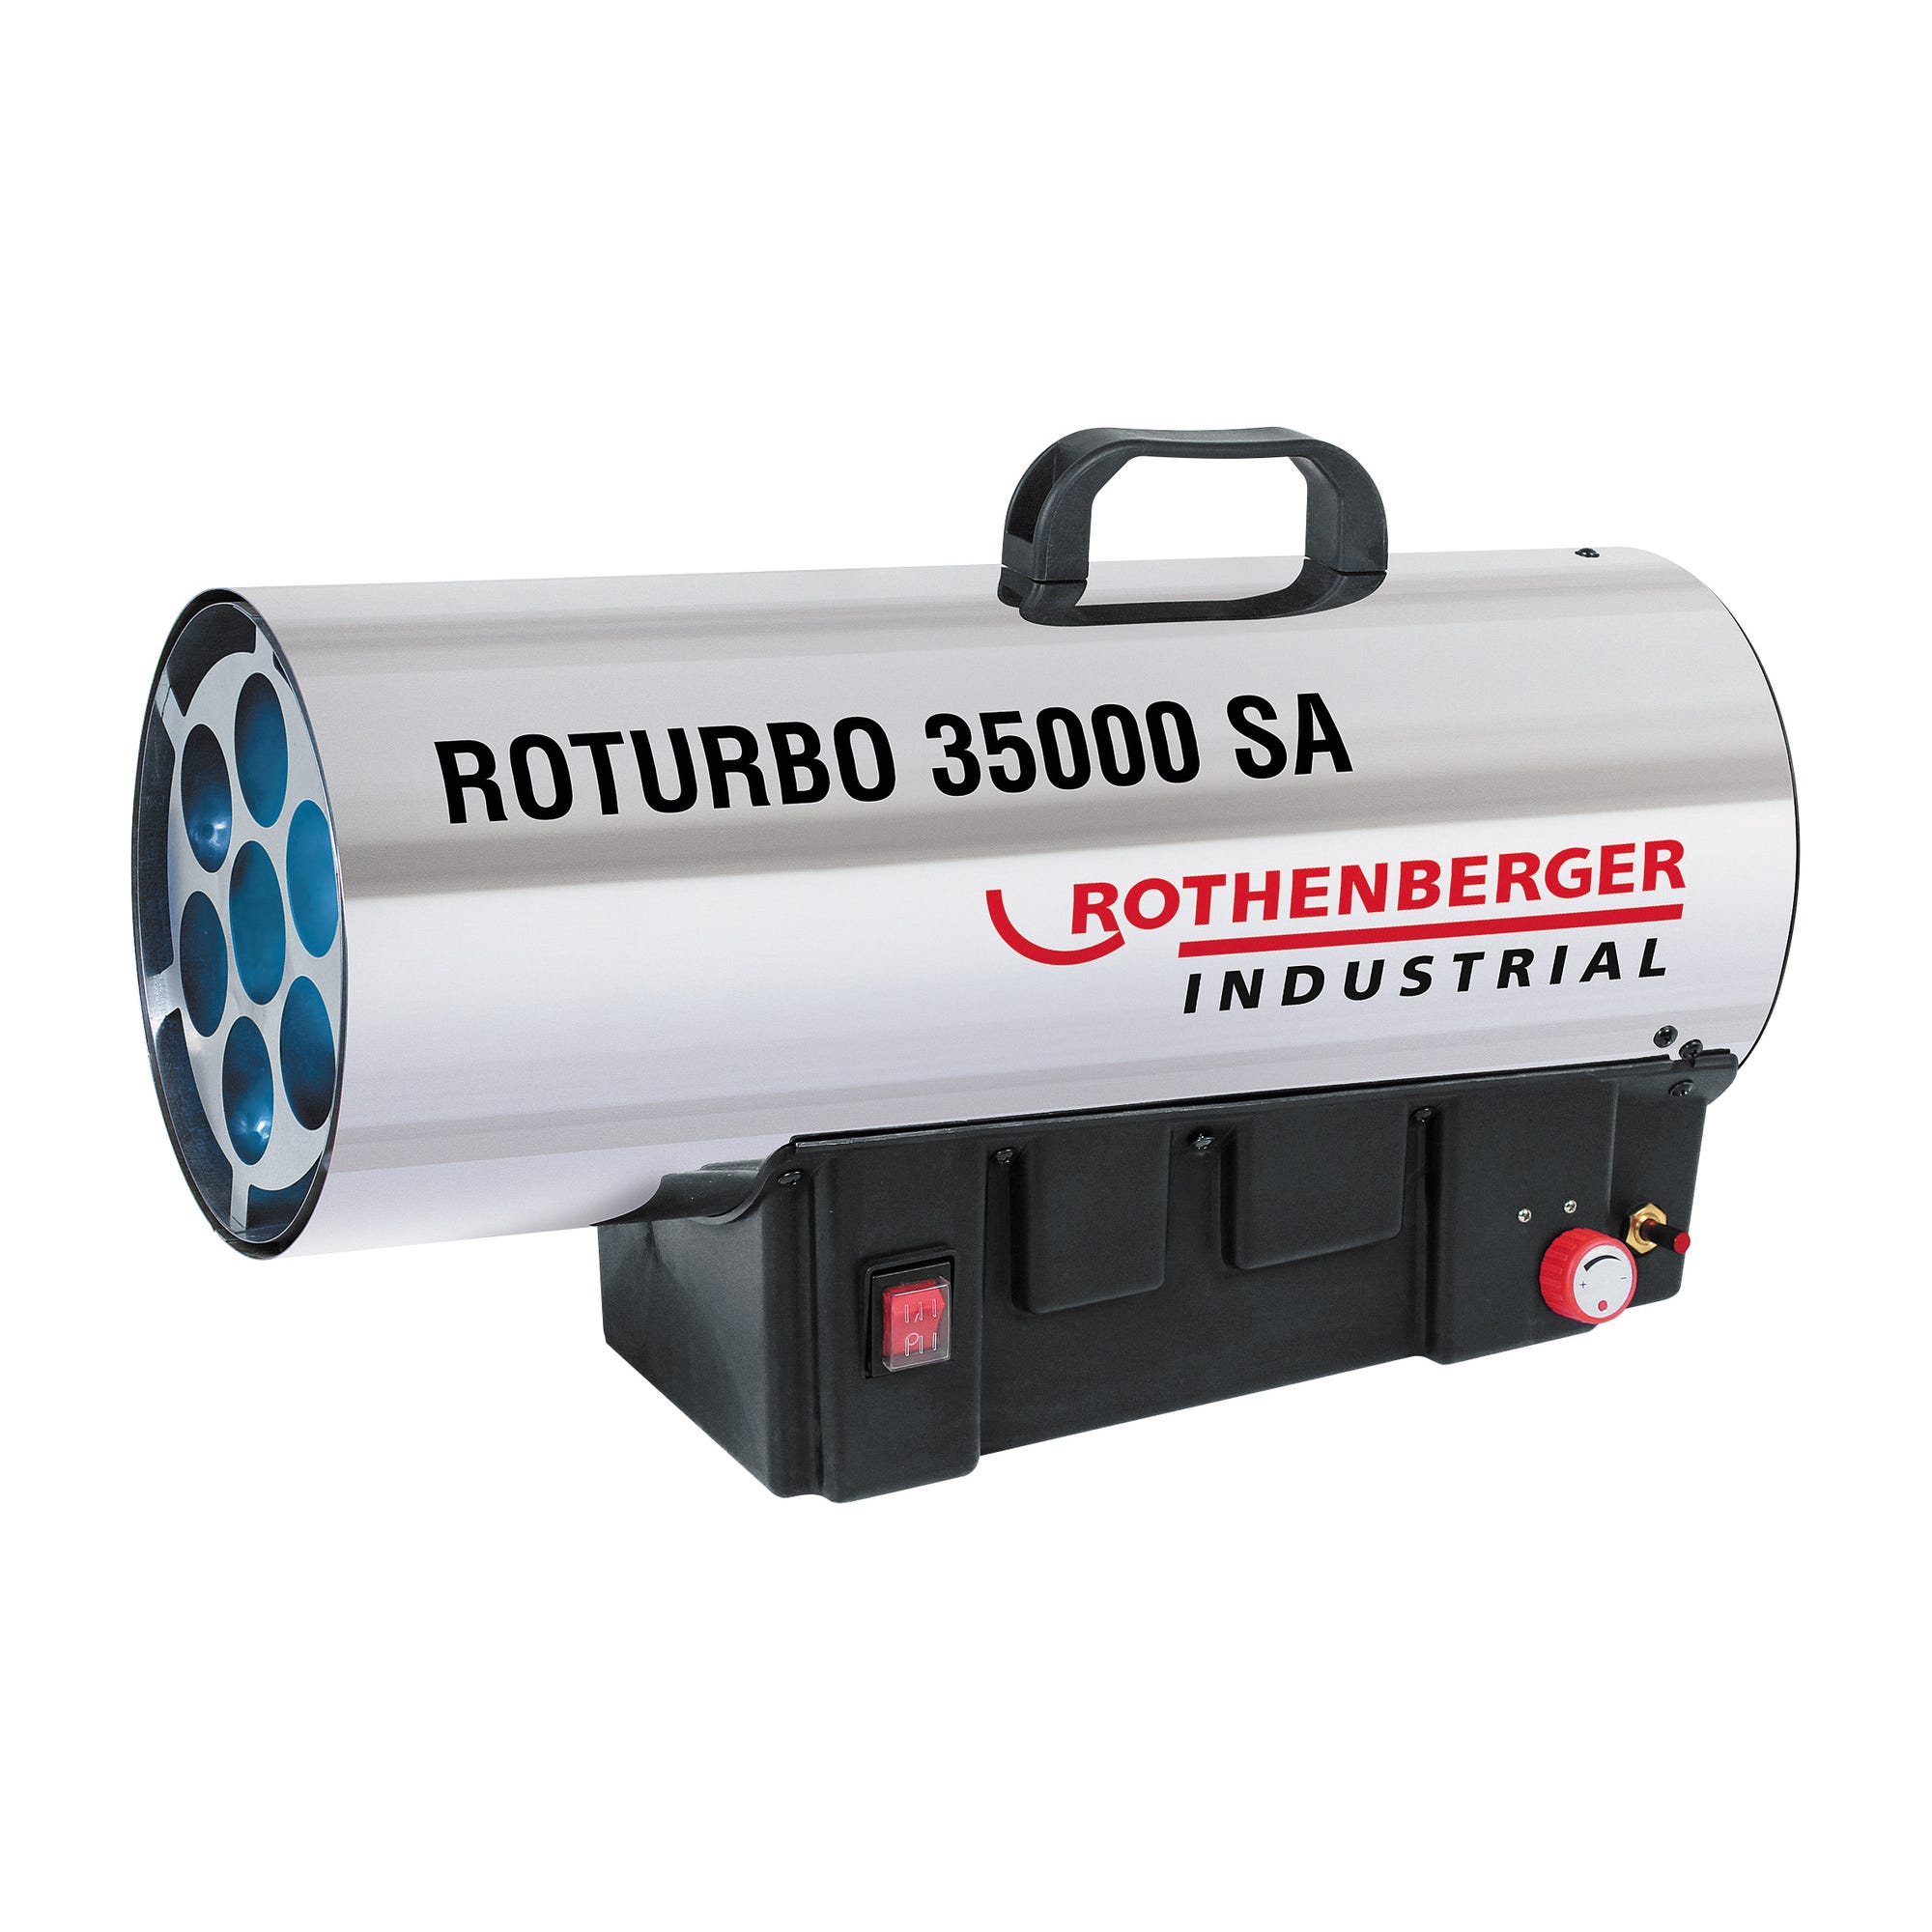 Générateur d'air chaud au gaz Roturbo 35000SA 19000 à 34000 Watts ROTHENBERGER 0